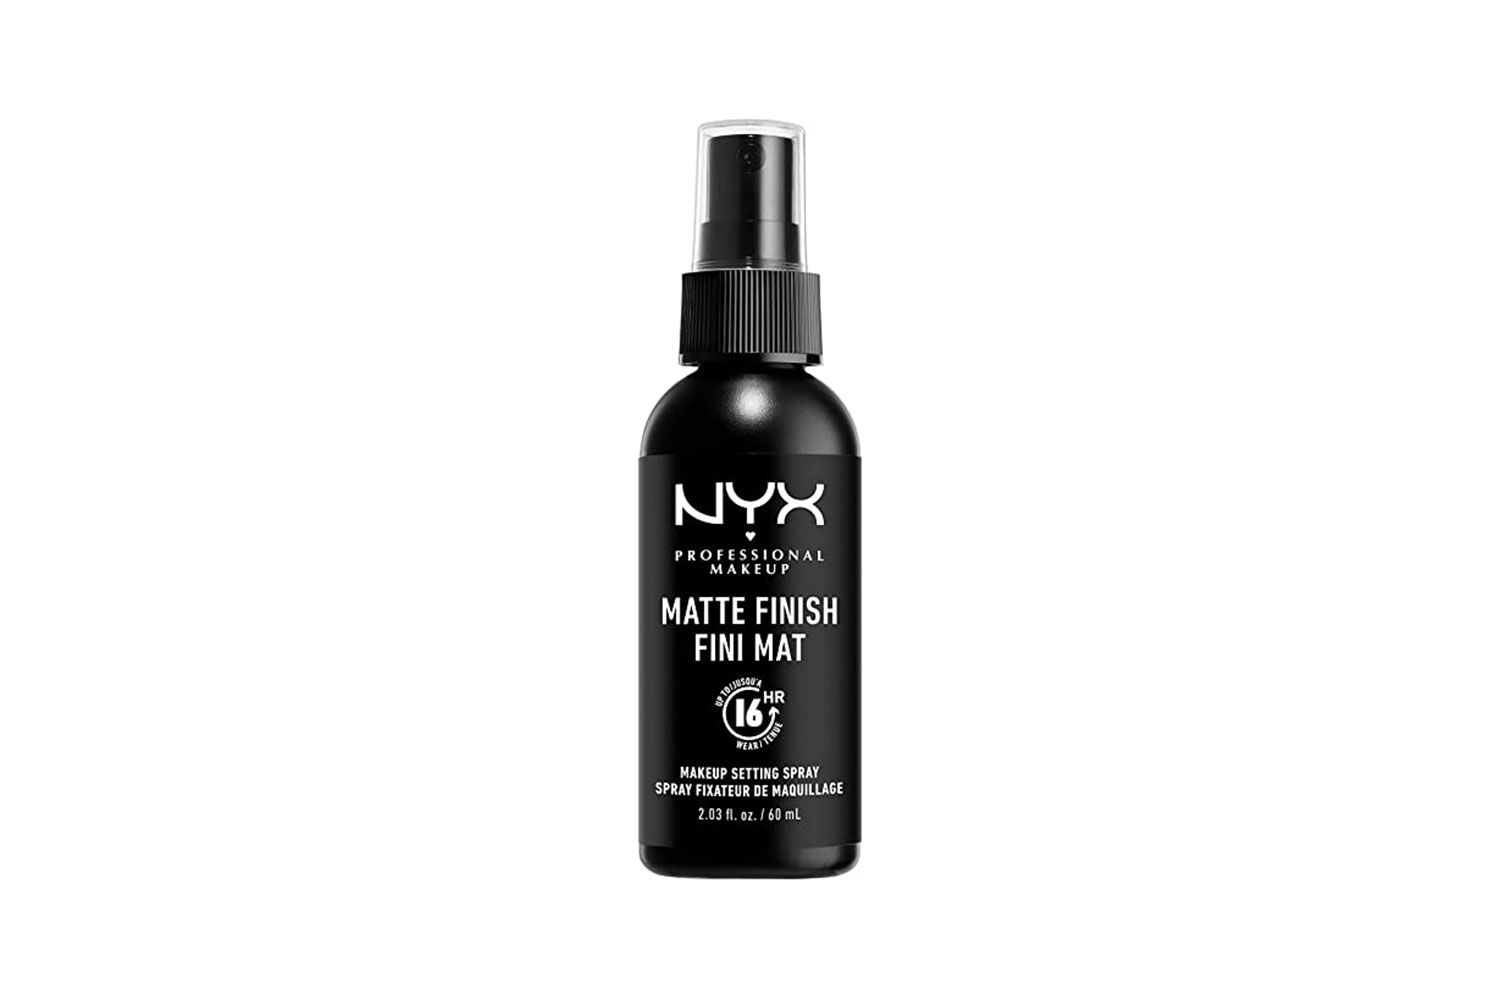 Spray de configuração de maquiagem profissional NYX fosco